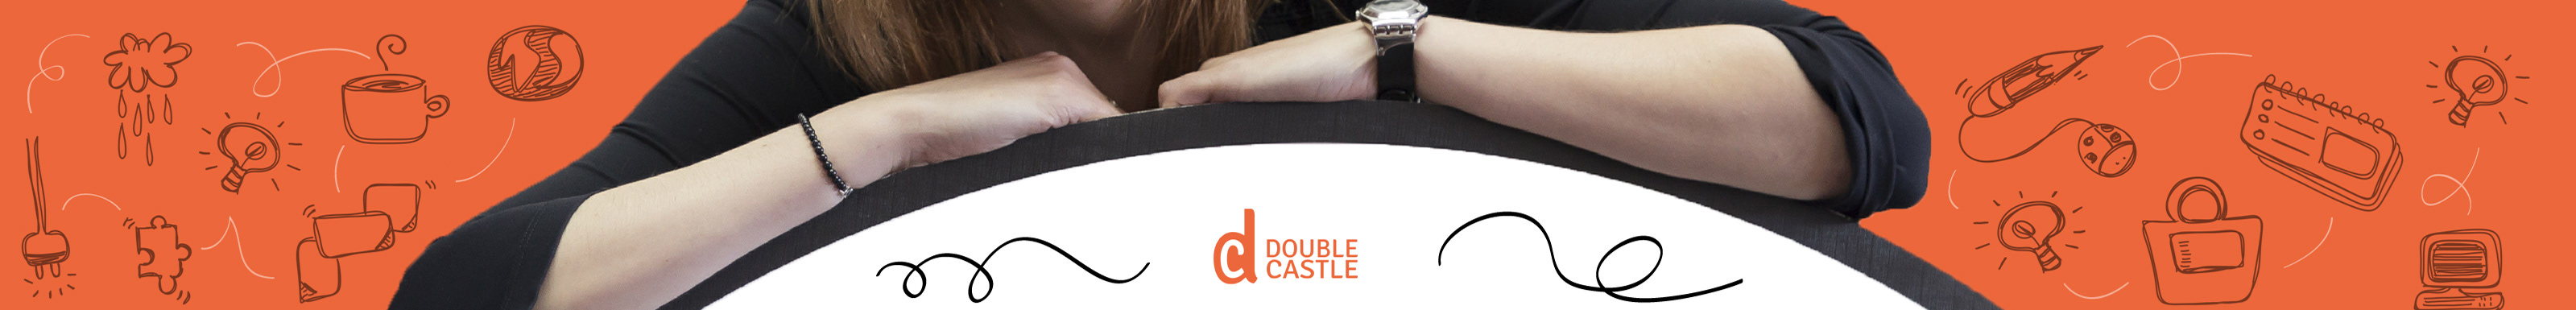 Profilbanneret til Double Castle